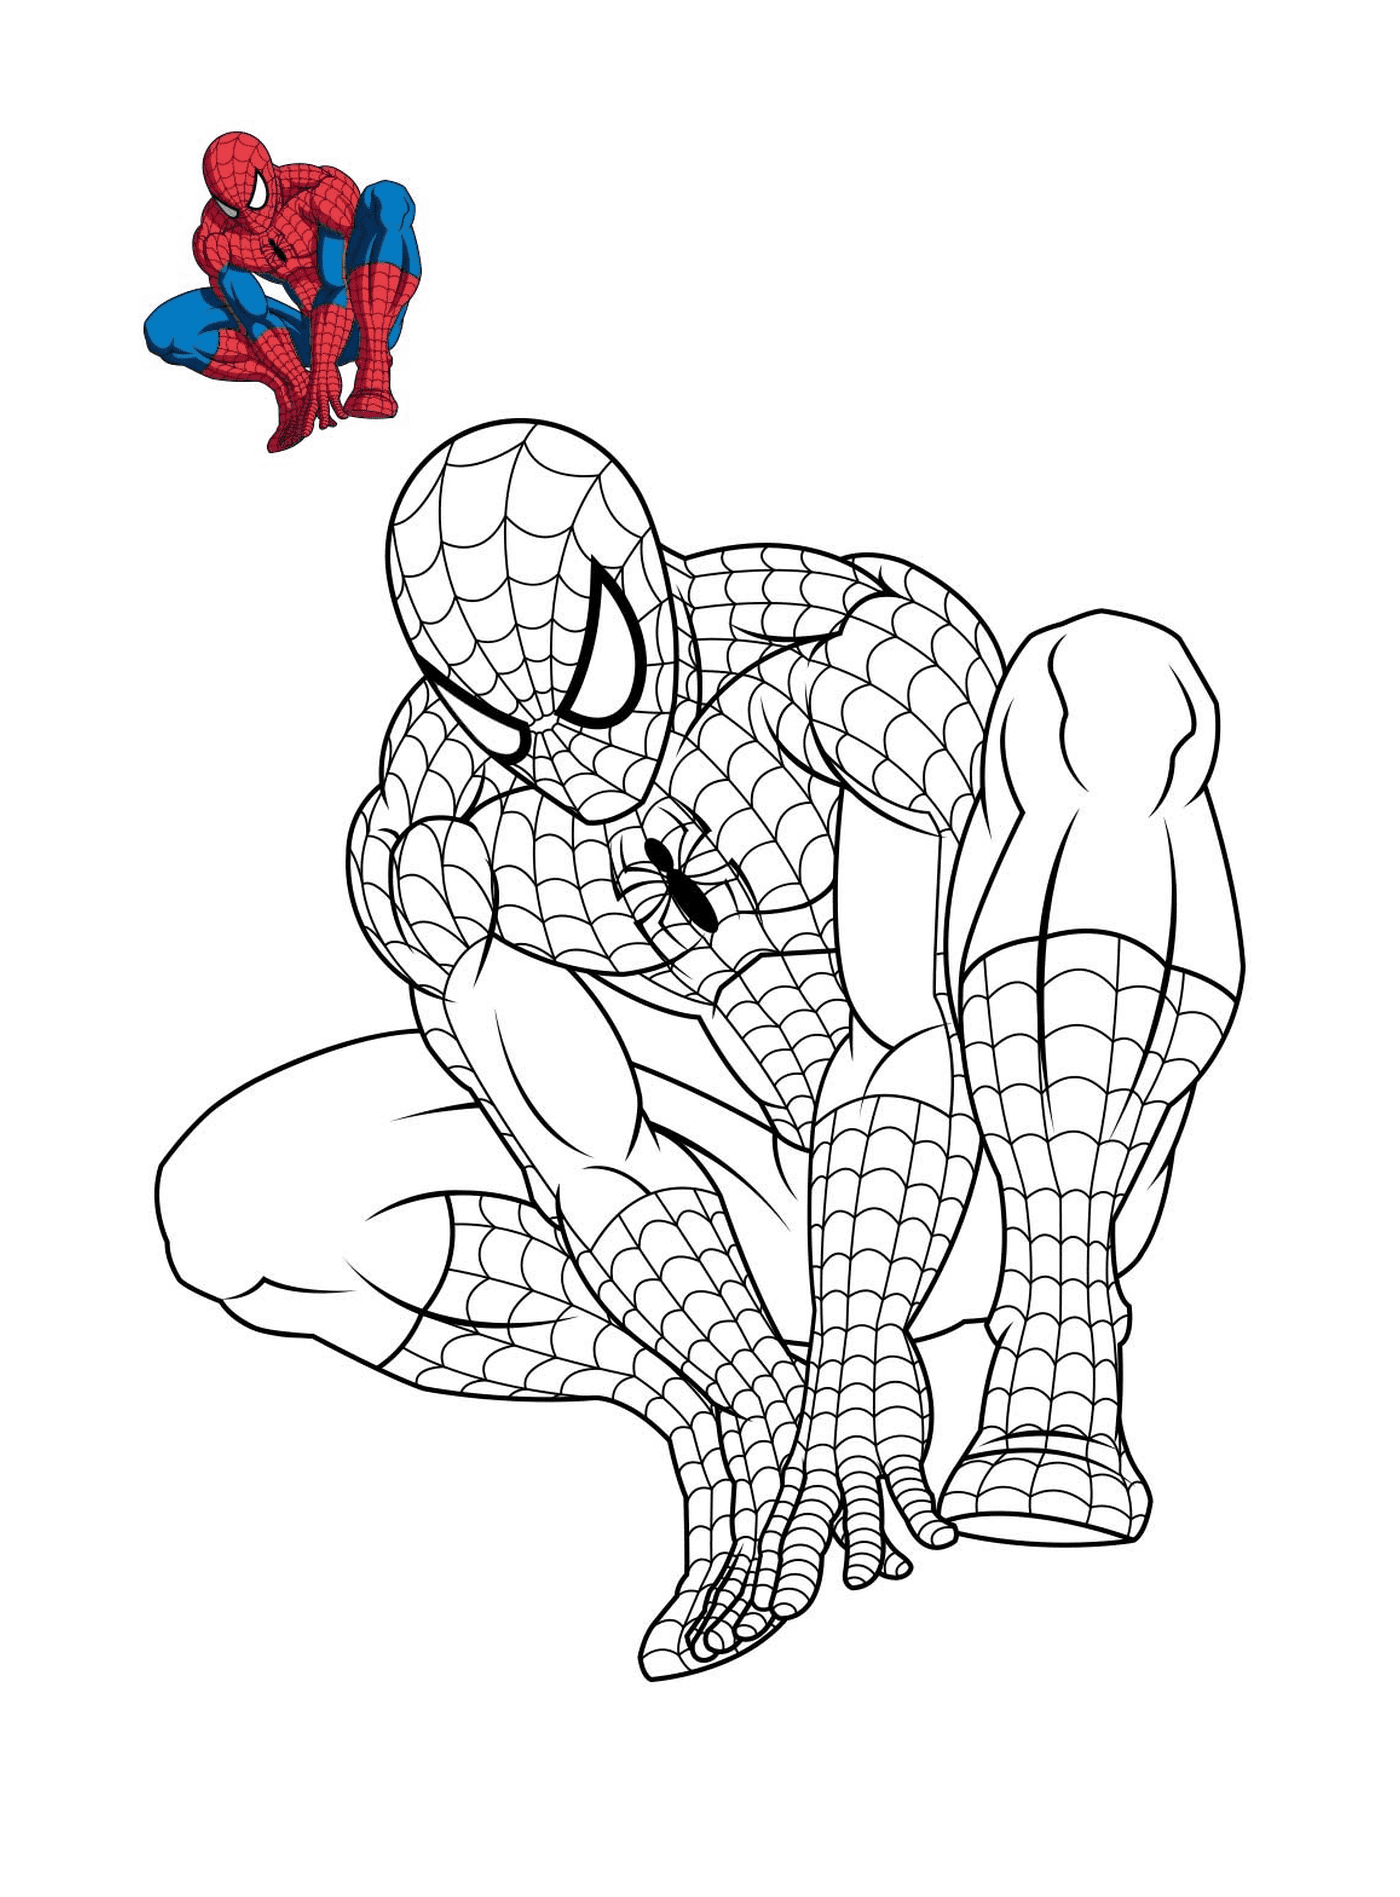  Spider-Man in riflessione 